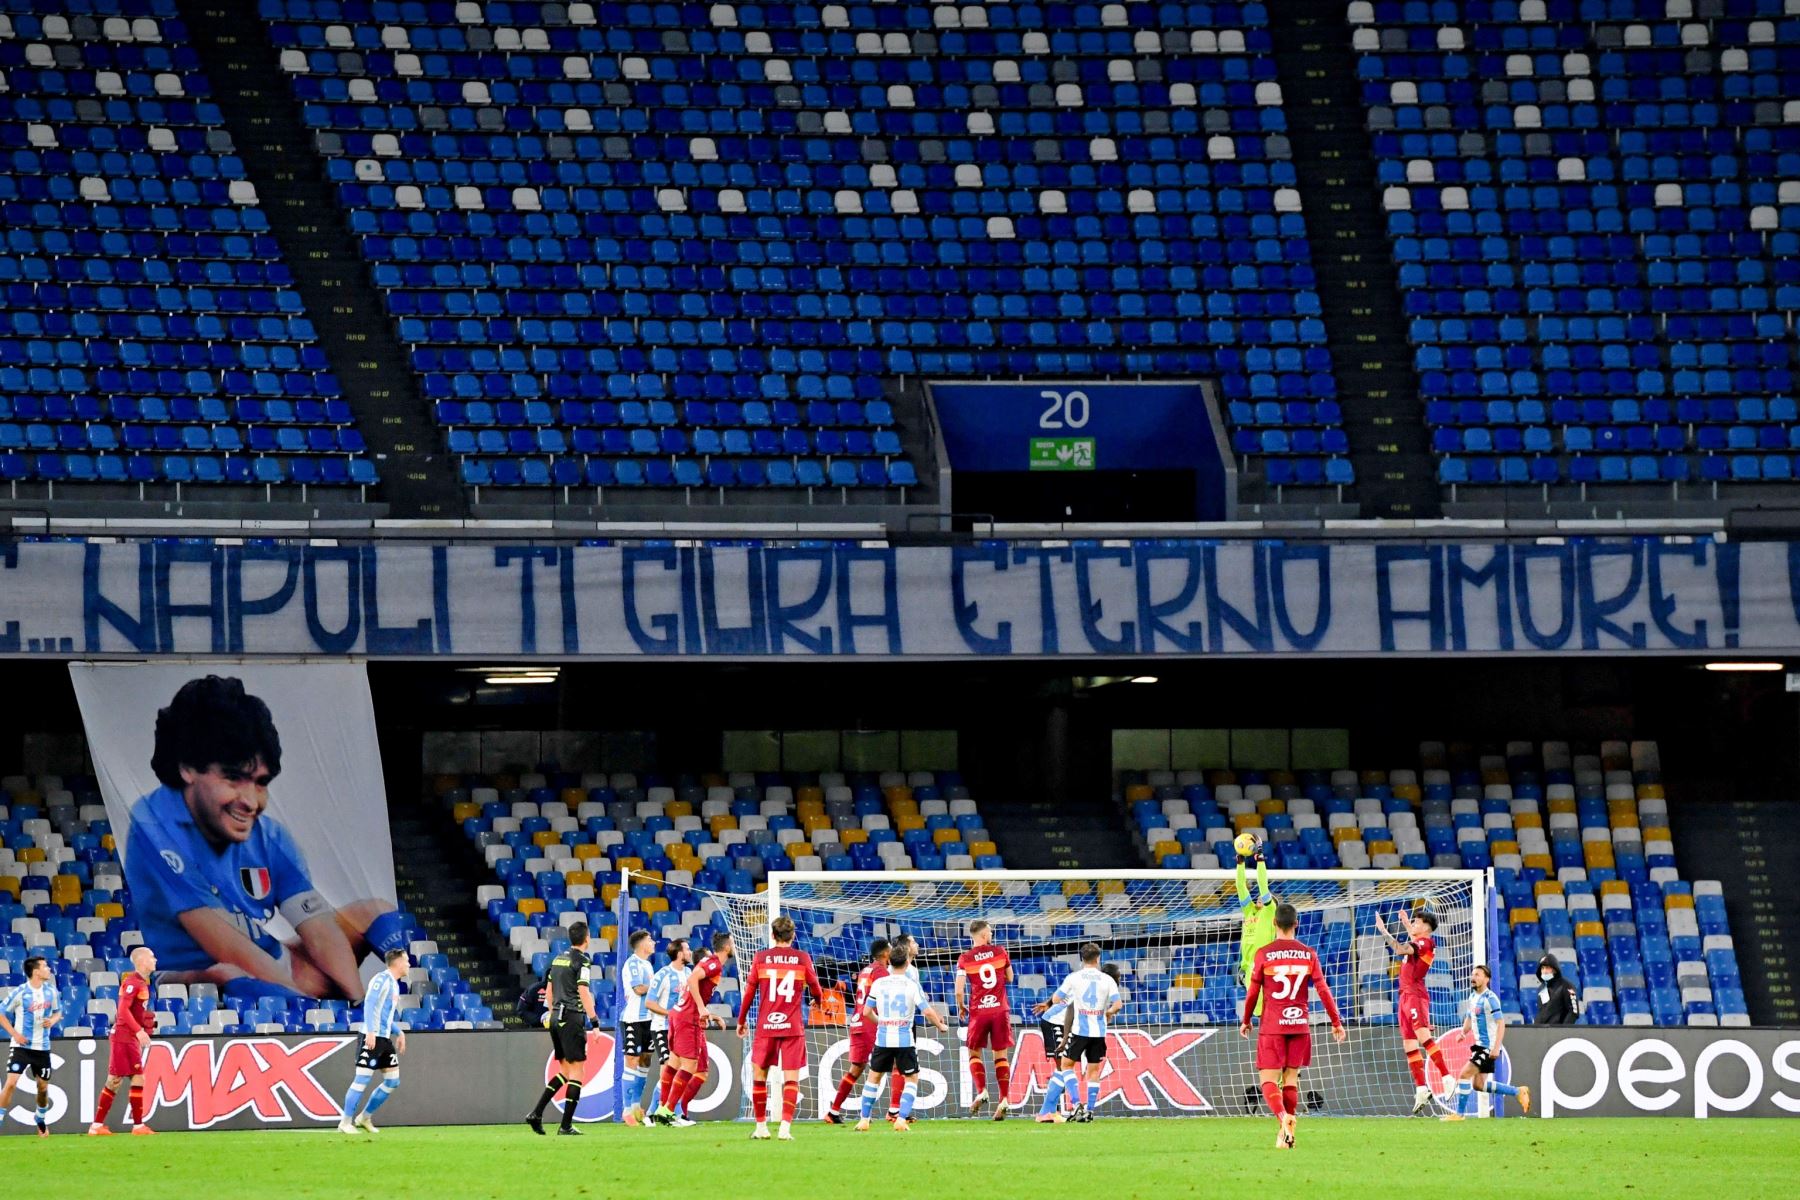 Una pancarta dedicada a Diego Armando Maradona se muestra durante el partido de fútbol de la Serie A italiana, Napoli vs AS Roma en  Nápoles, Italia.
Foto: EFE